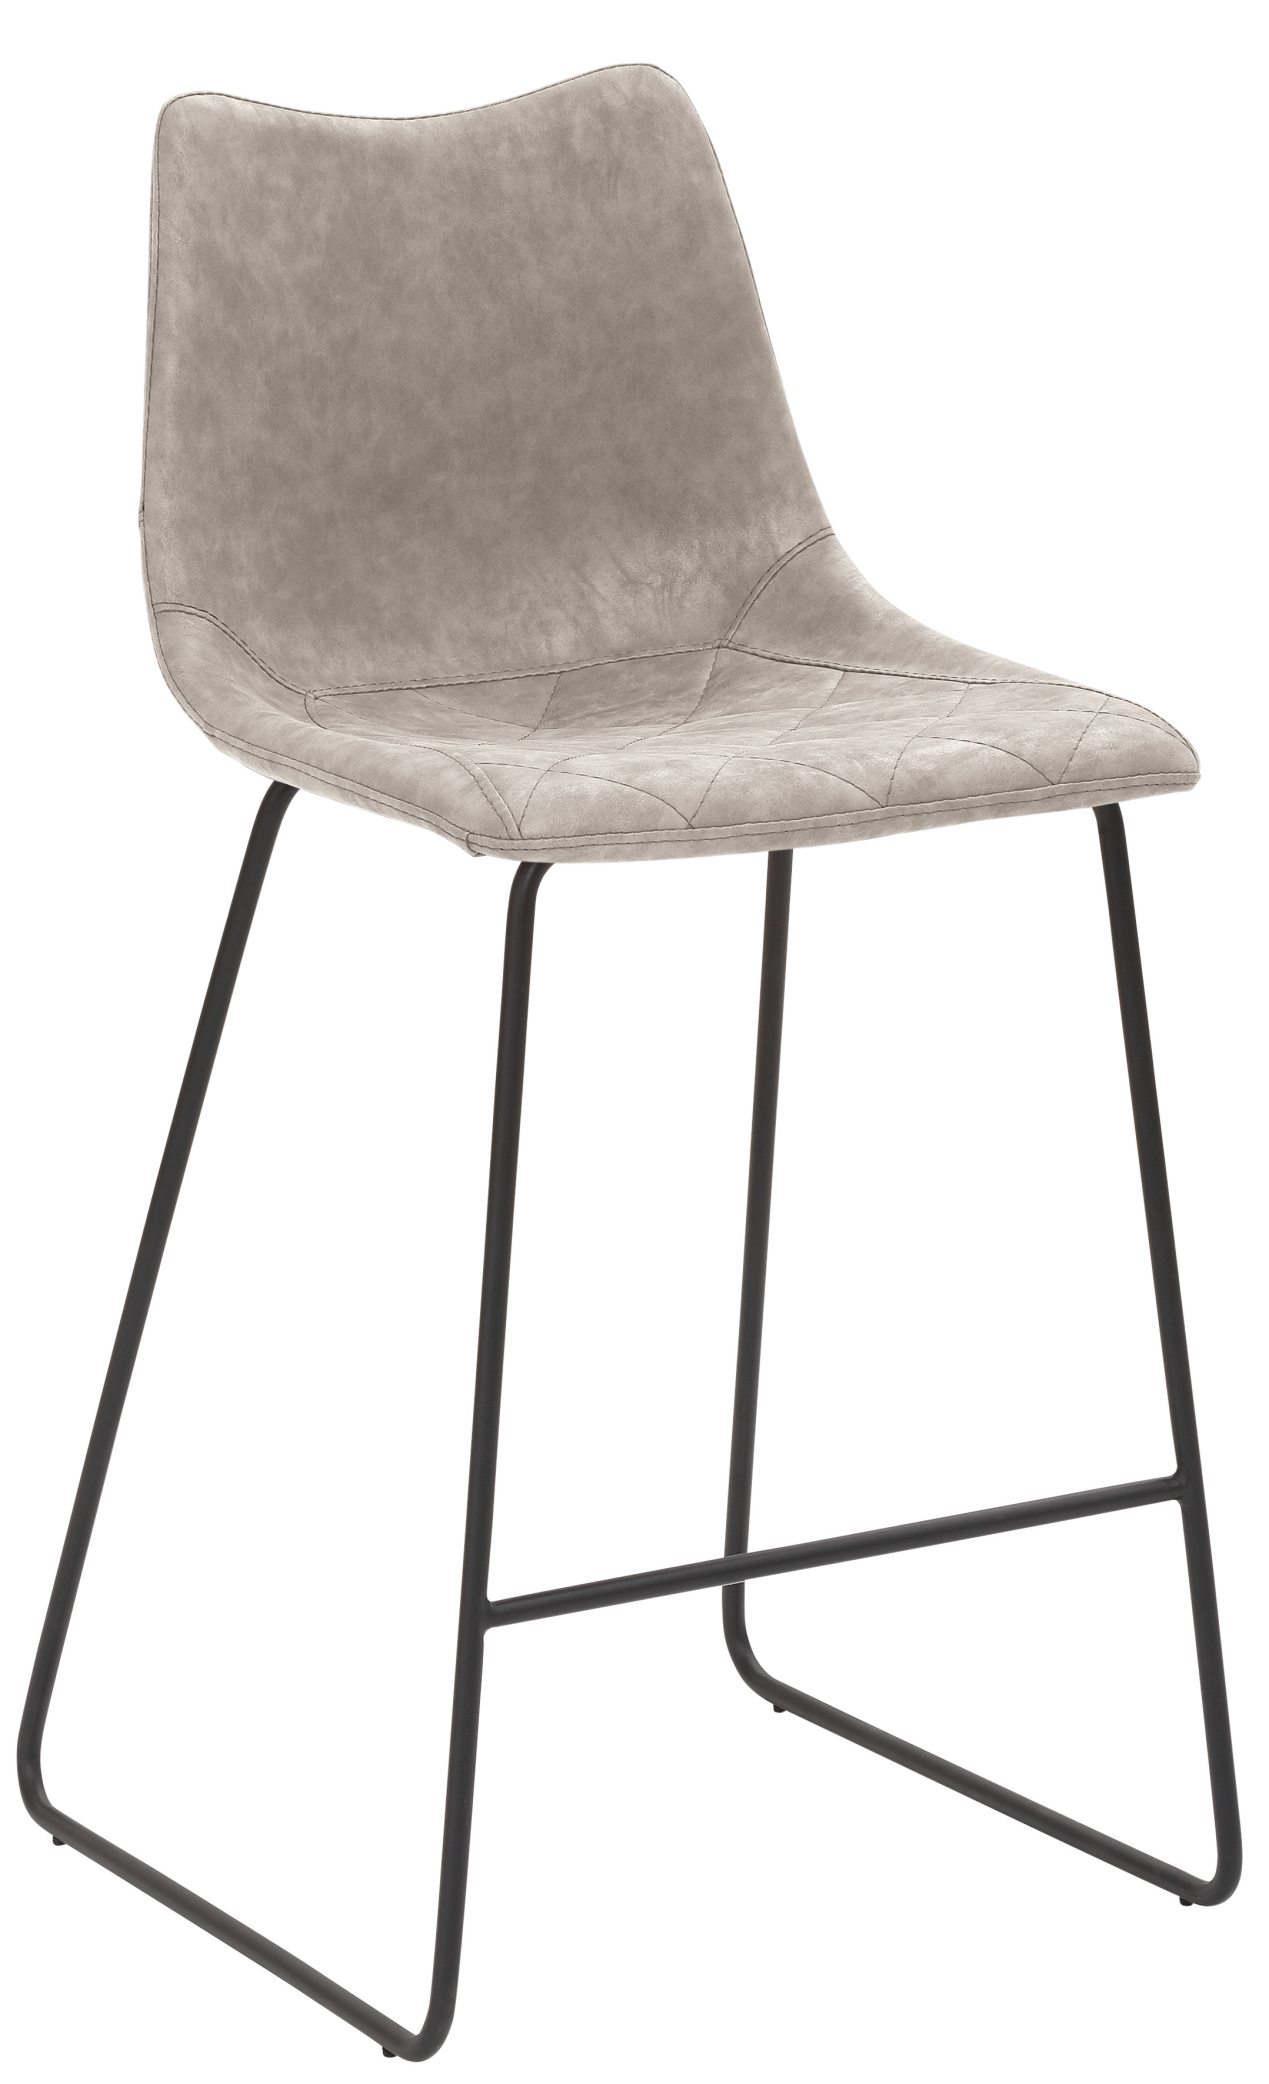 Barhocker mit geringer Sitzhöhe von 65 cm bequeme Sitzschale mit Kunstlederbezug